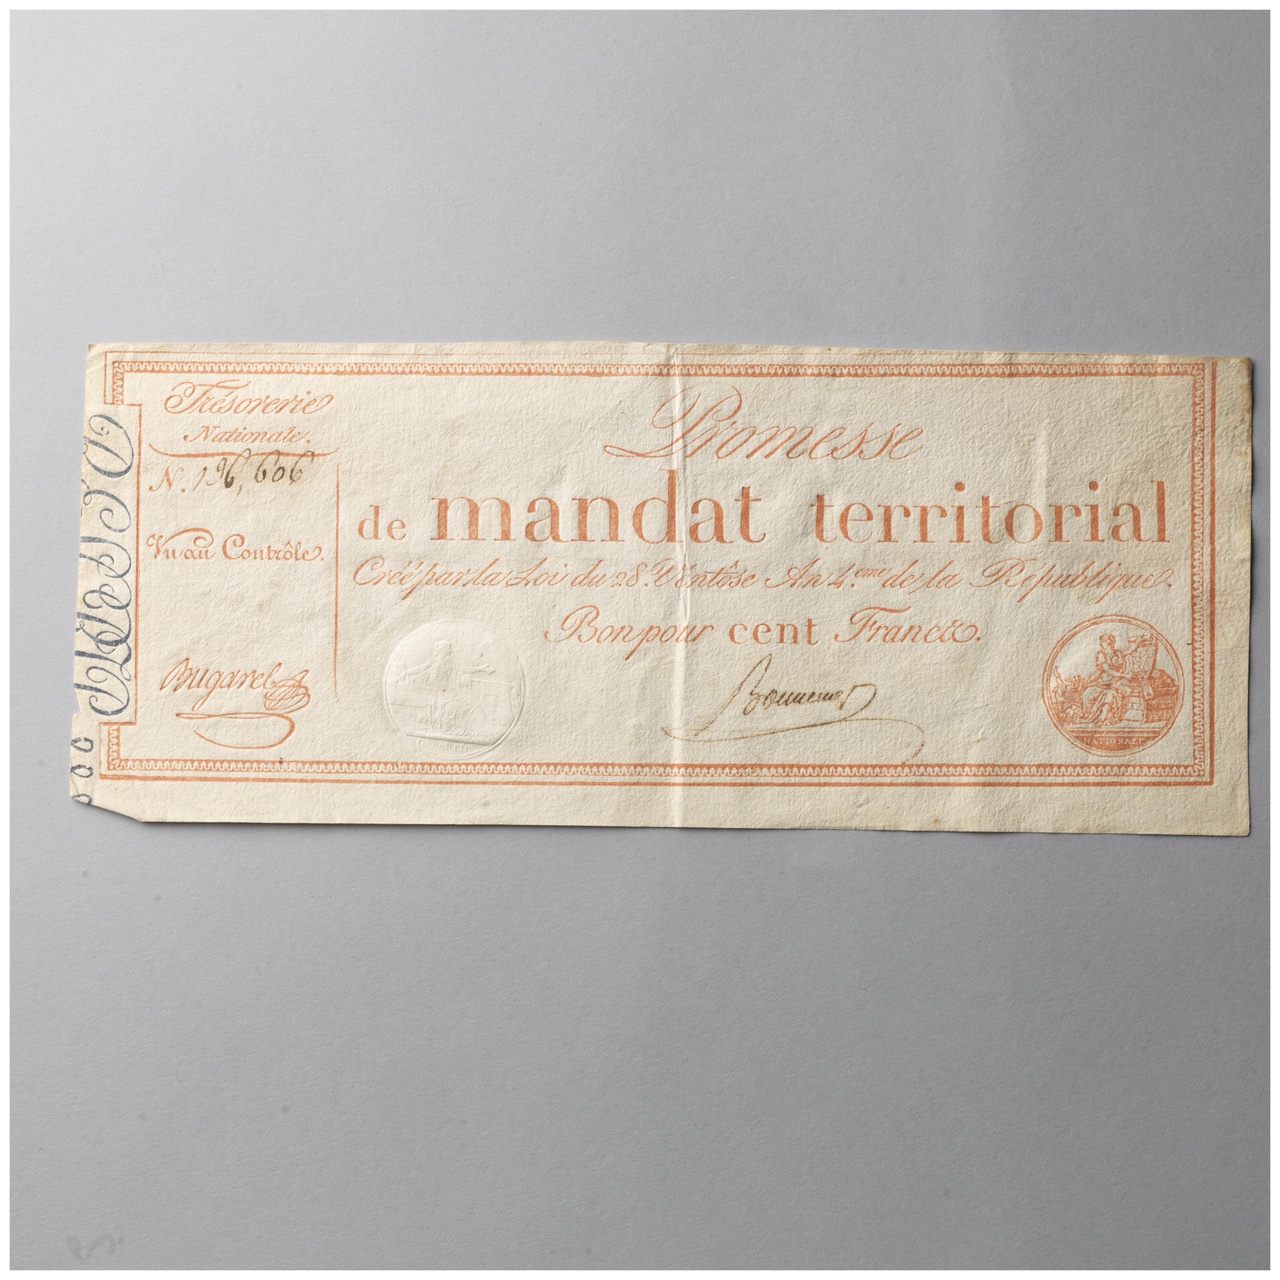 Promesse de mandat territorial van 100 francs